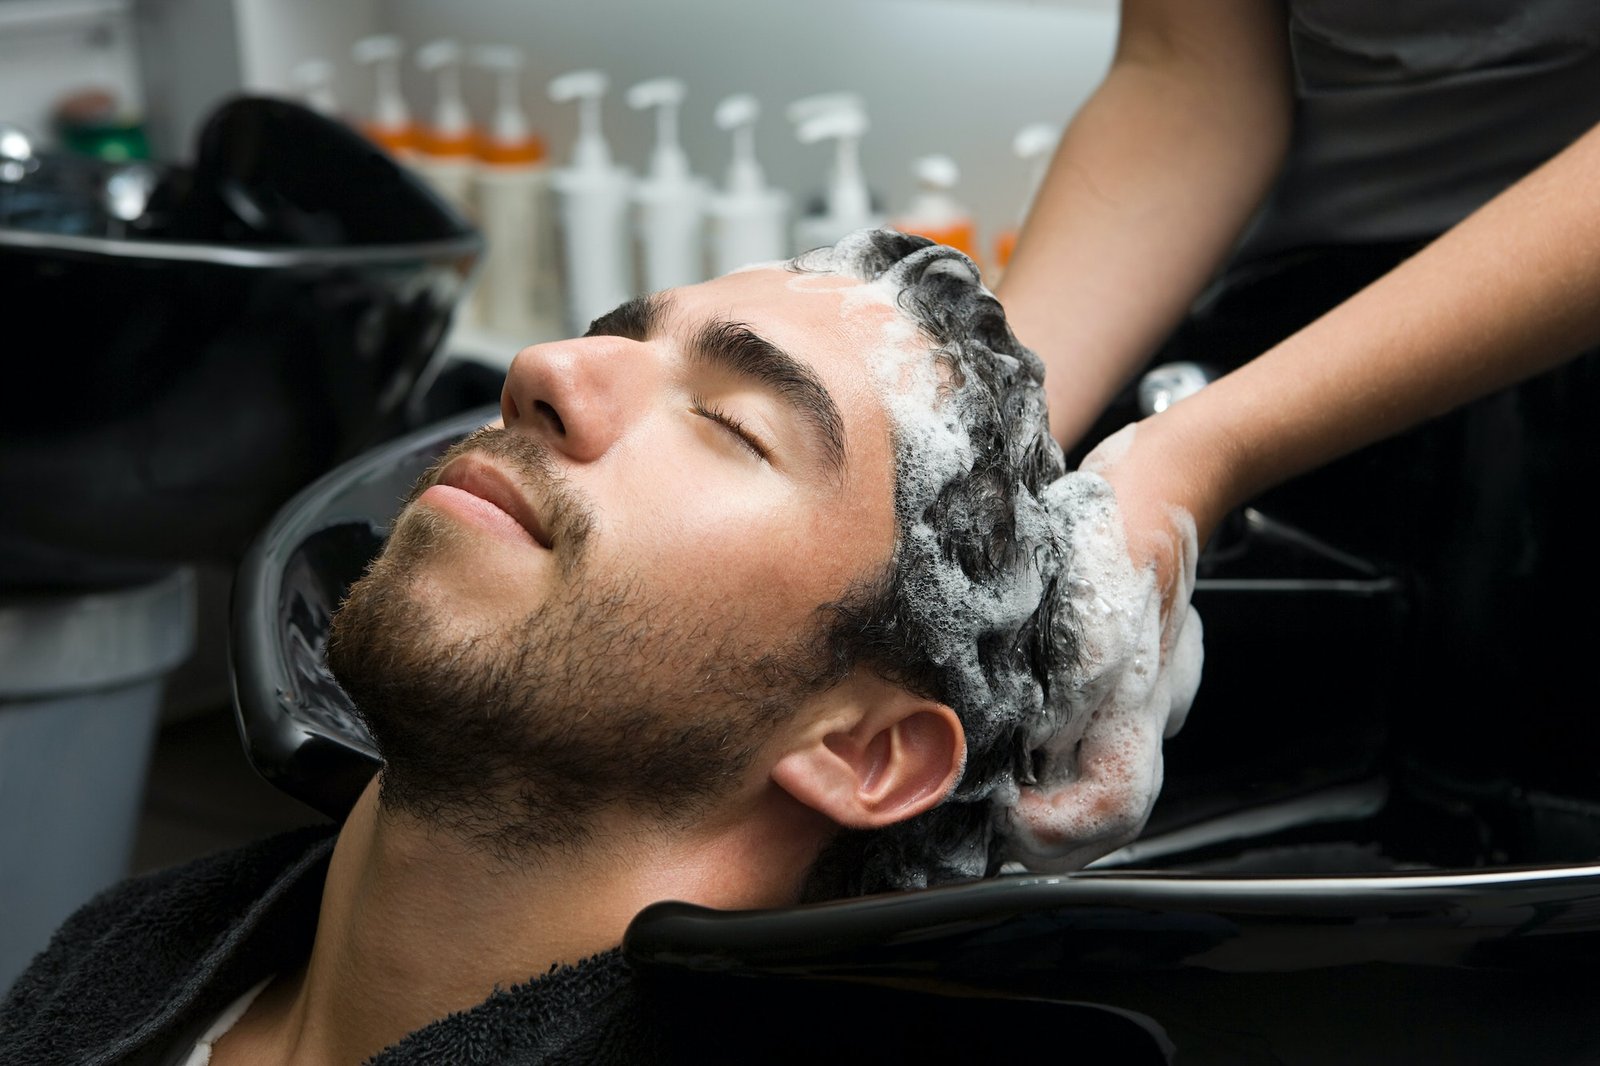 Hun masserer så forsiktig shampooen inn i håret til mannen, og sørger for å dekke alle områder fra hodebunnen til tuppene. shampoo og balsam